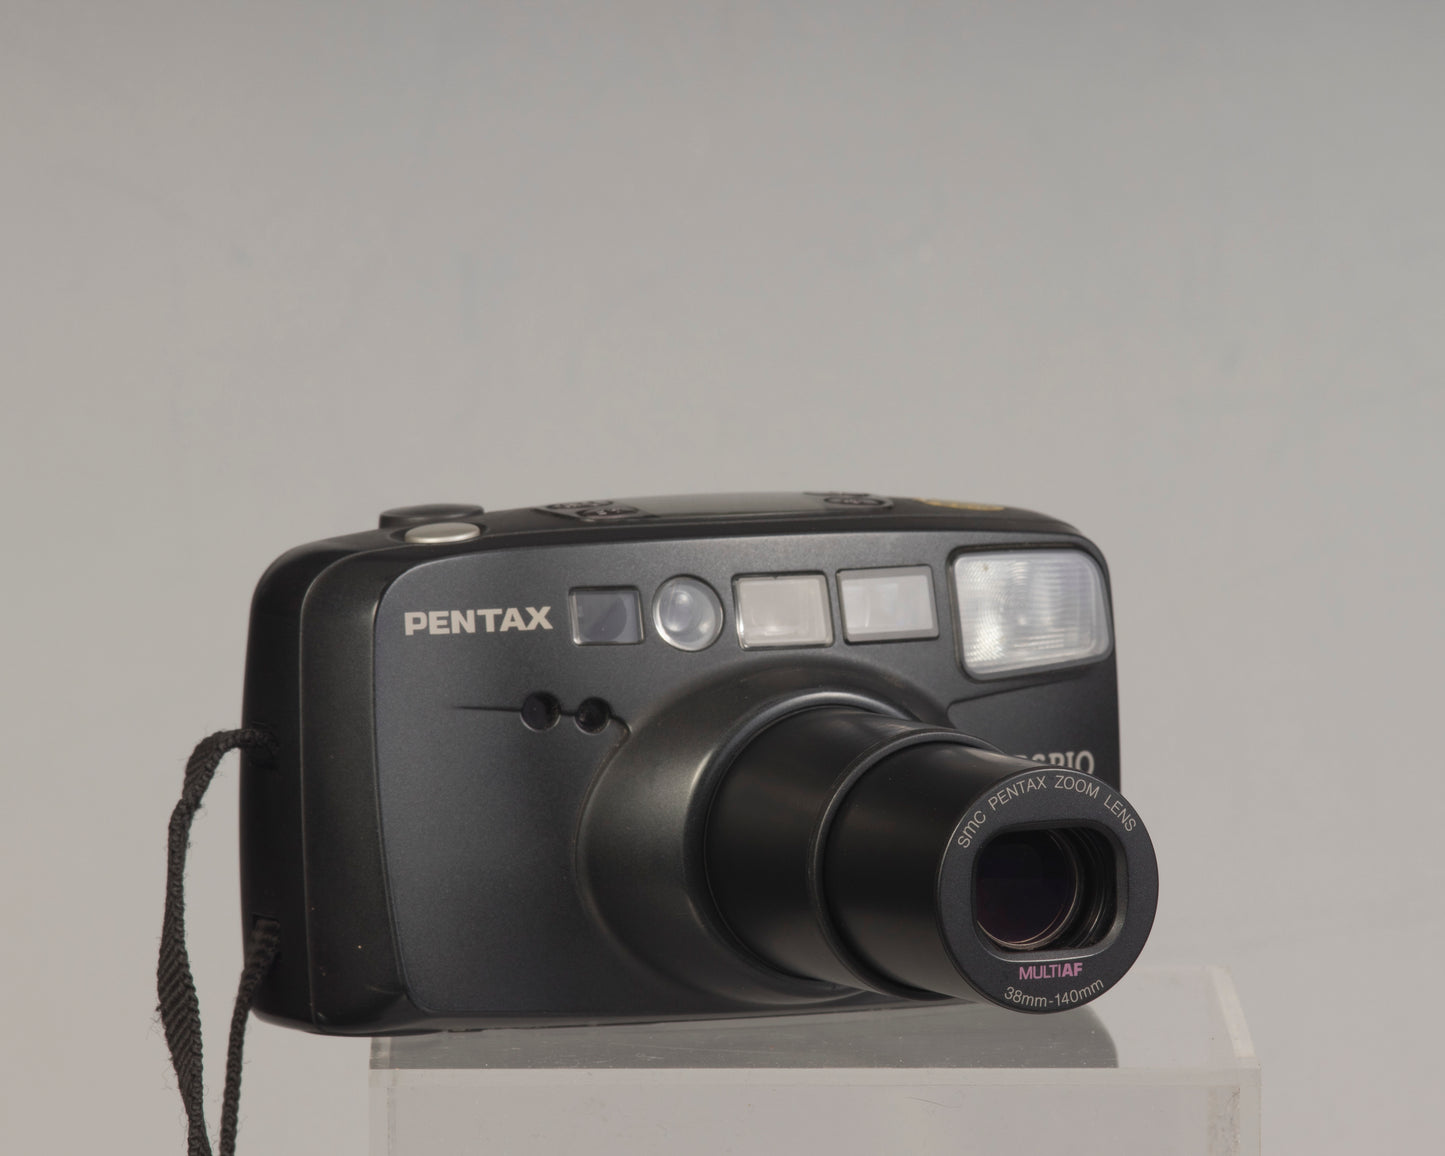 Pentax Espio 140 35mm camera